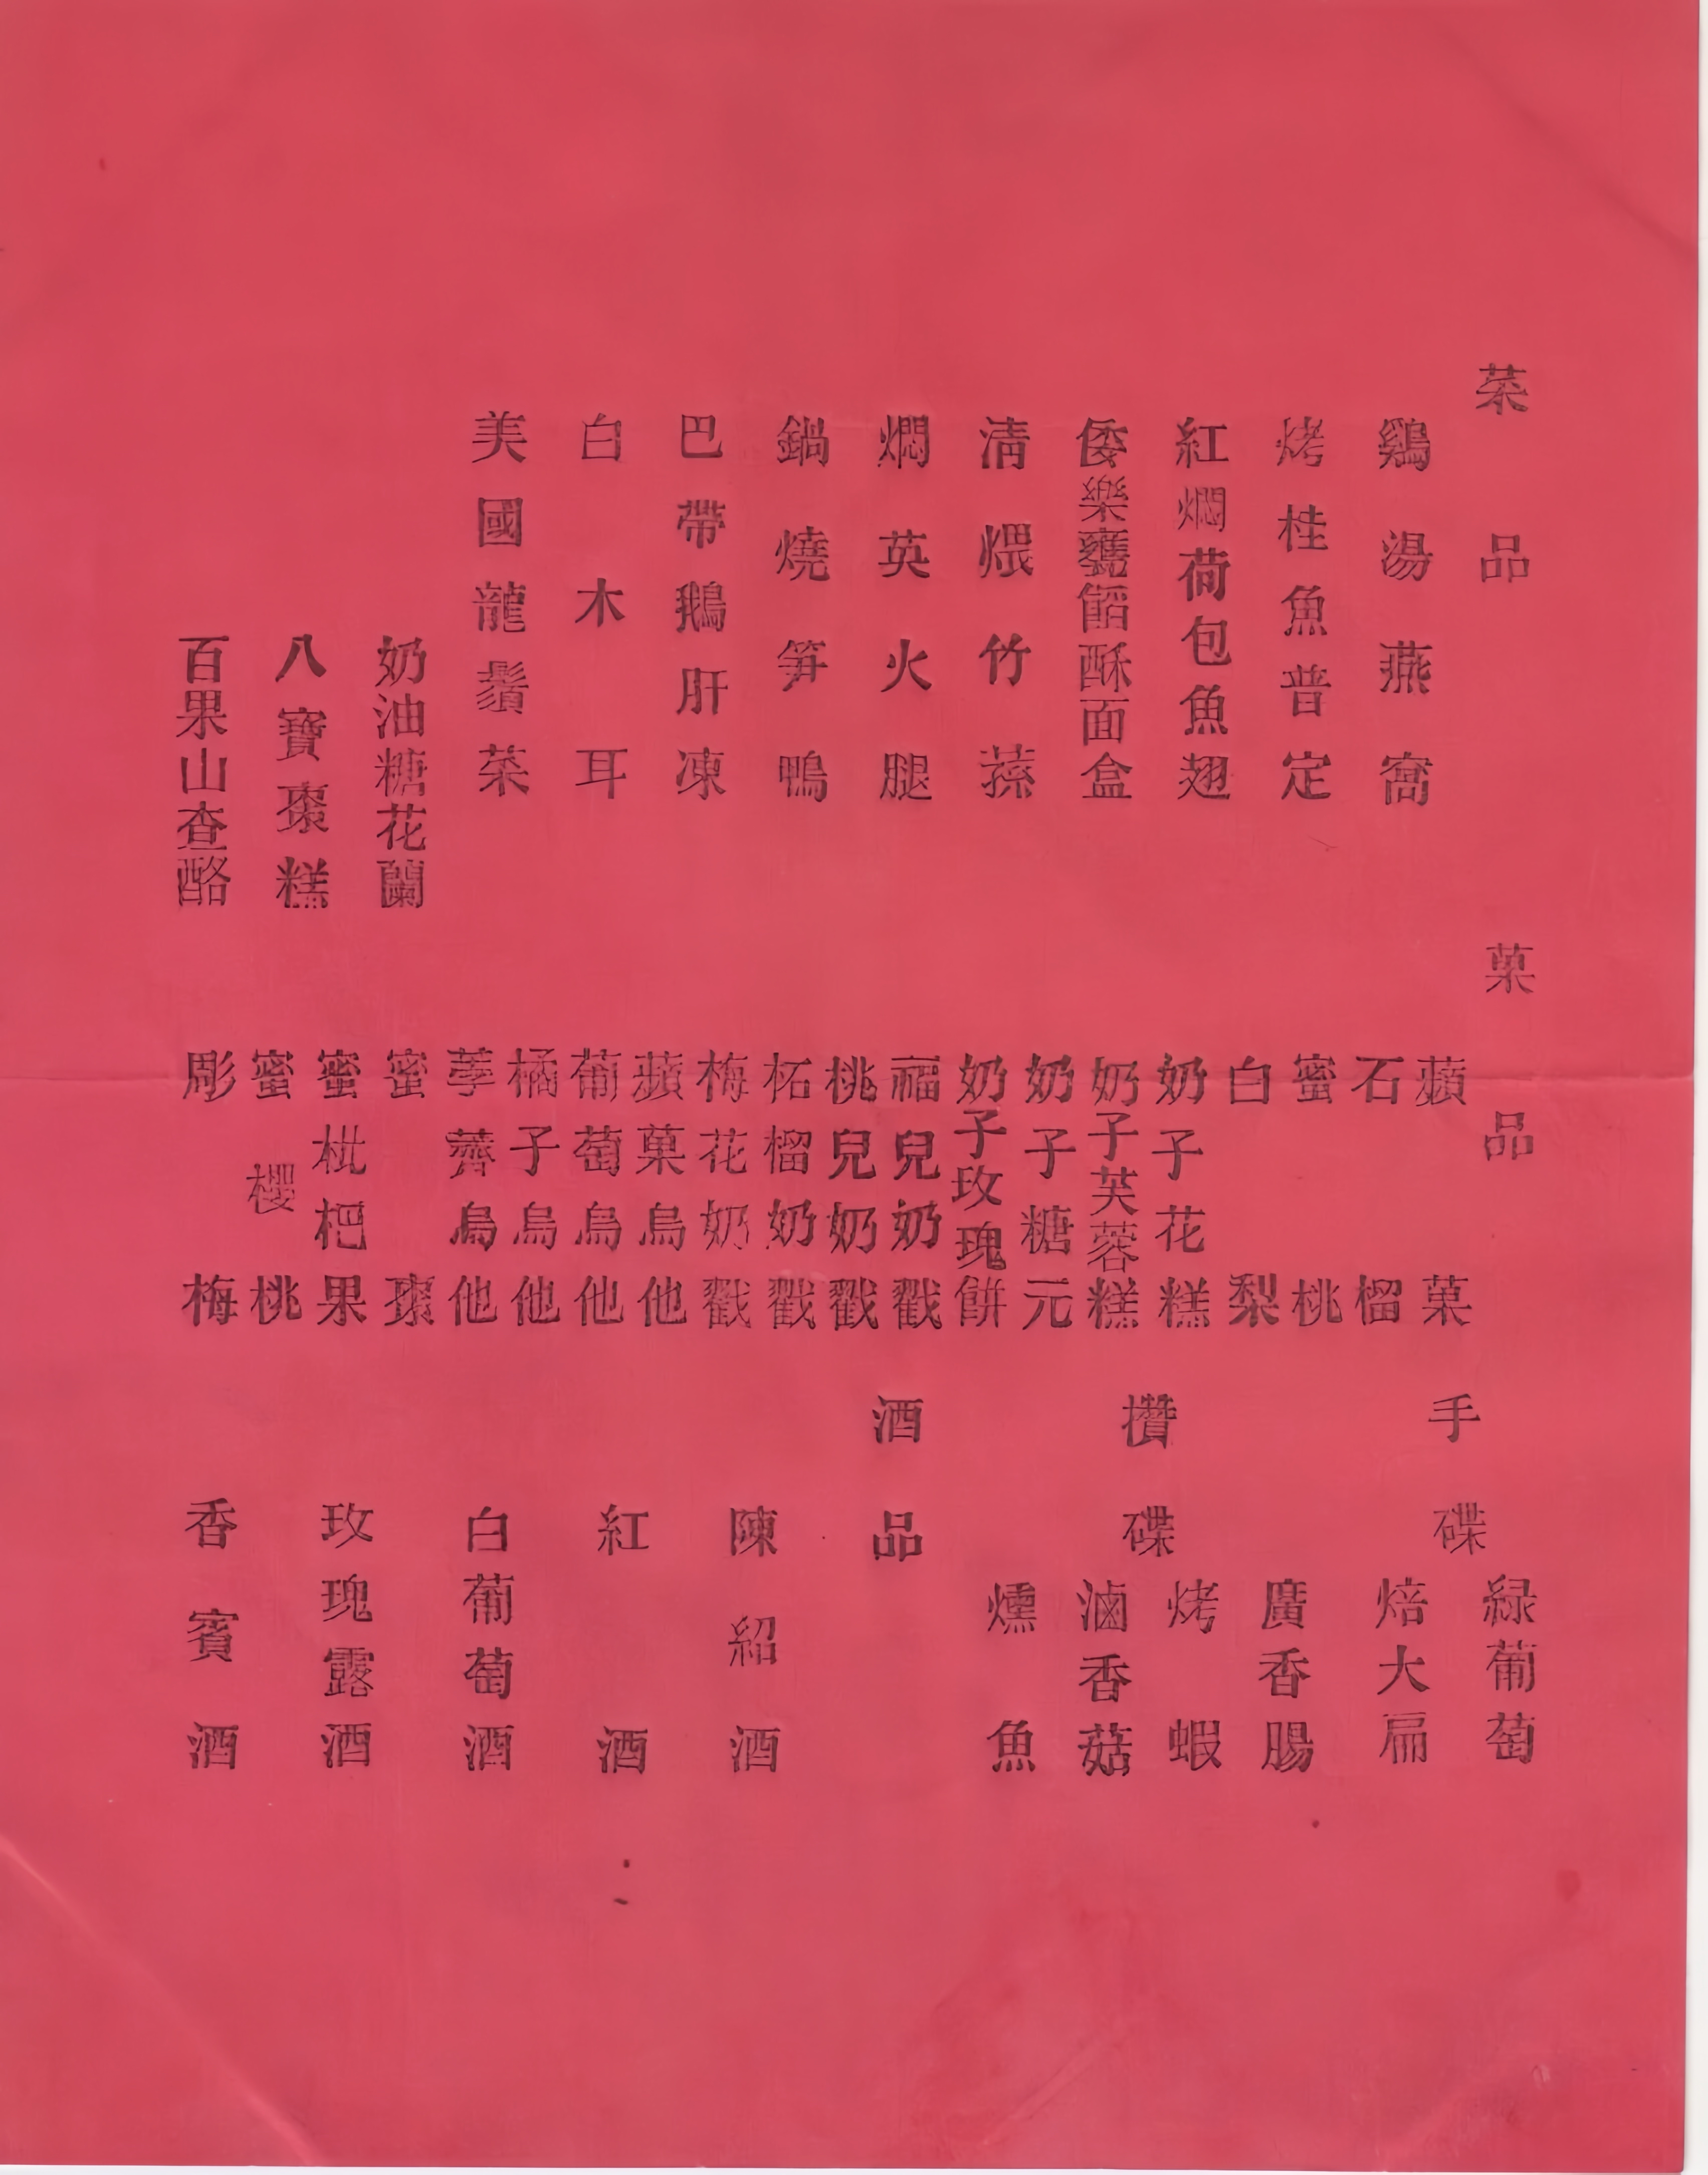 南京民国红公馆菜单图片